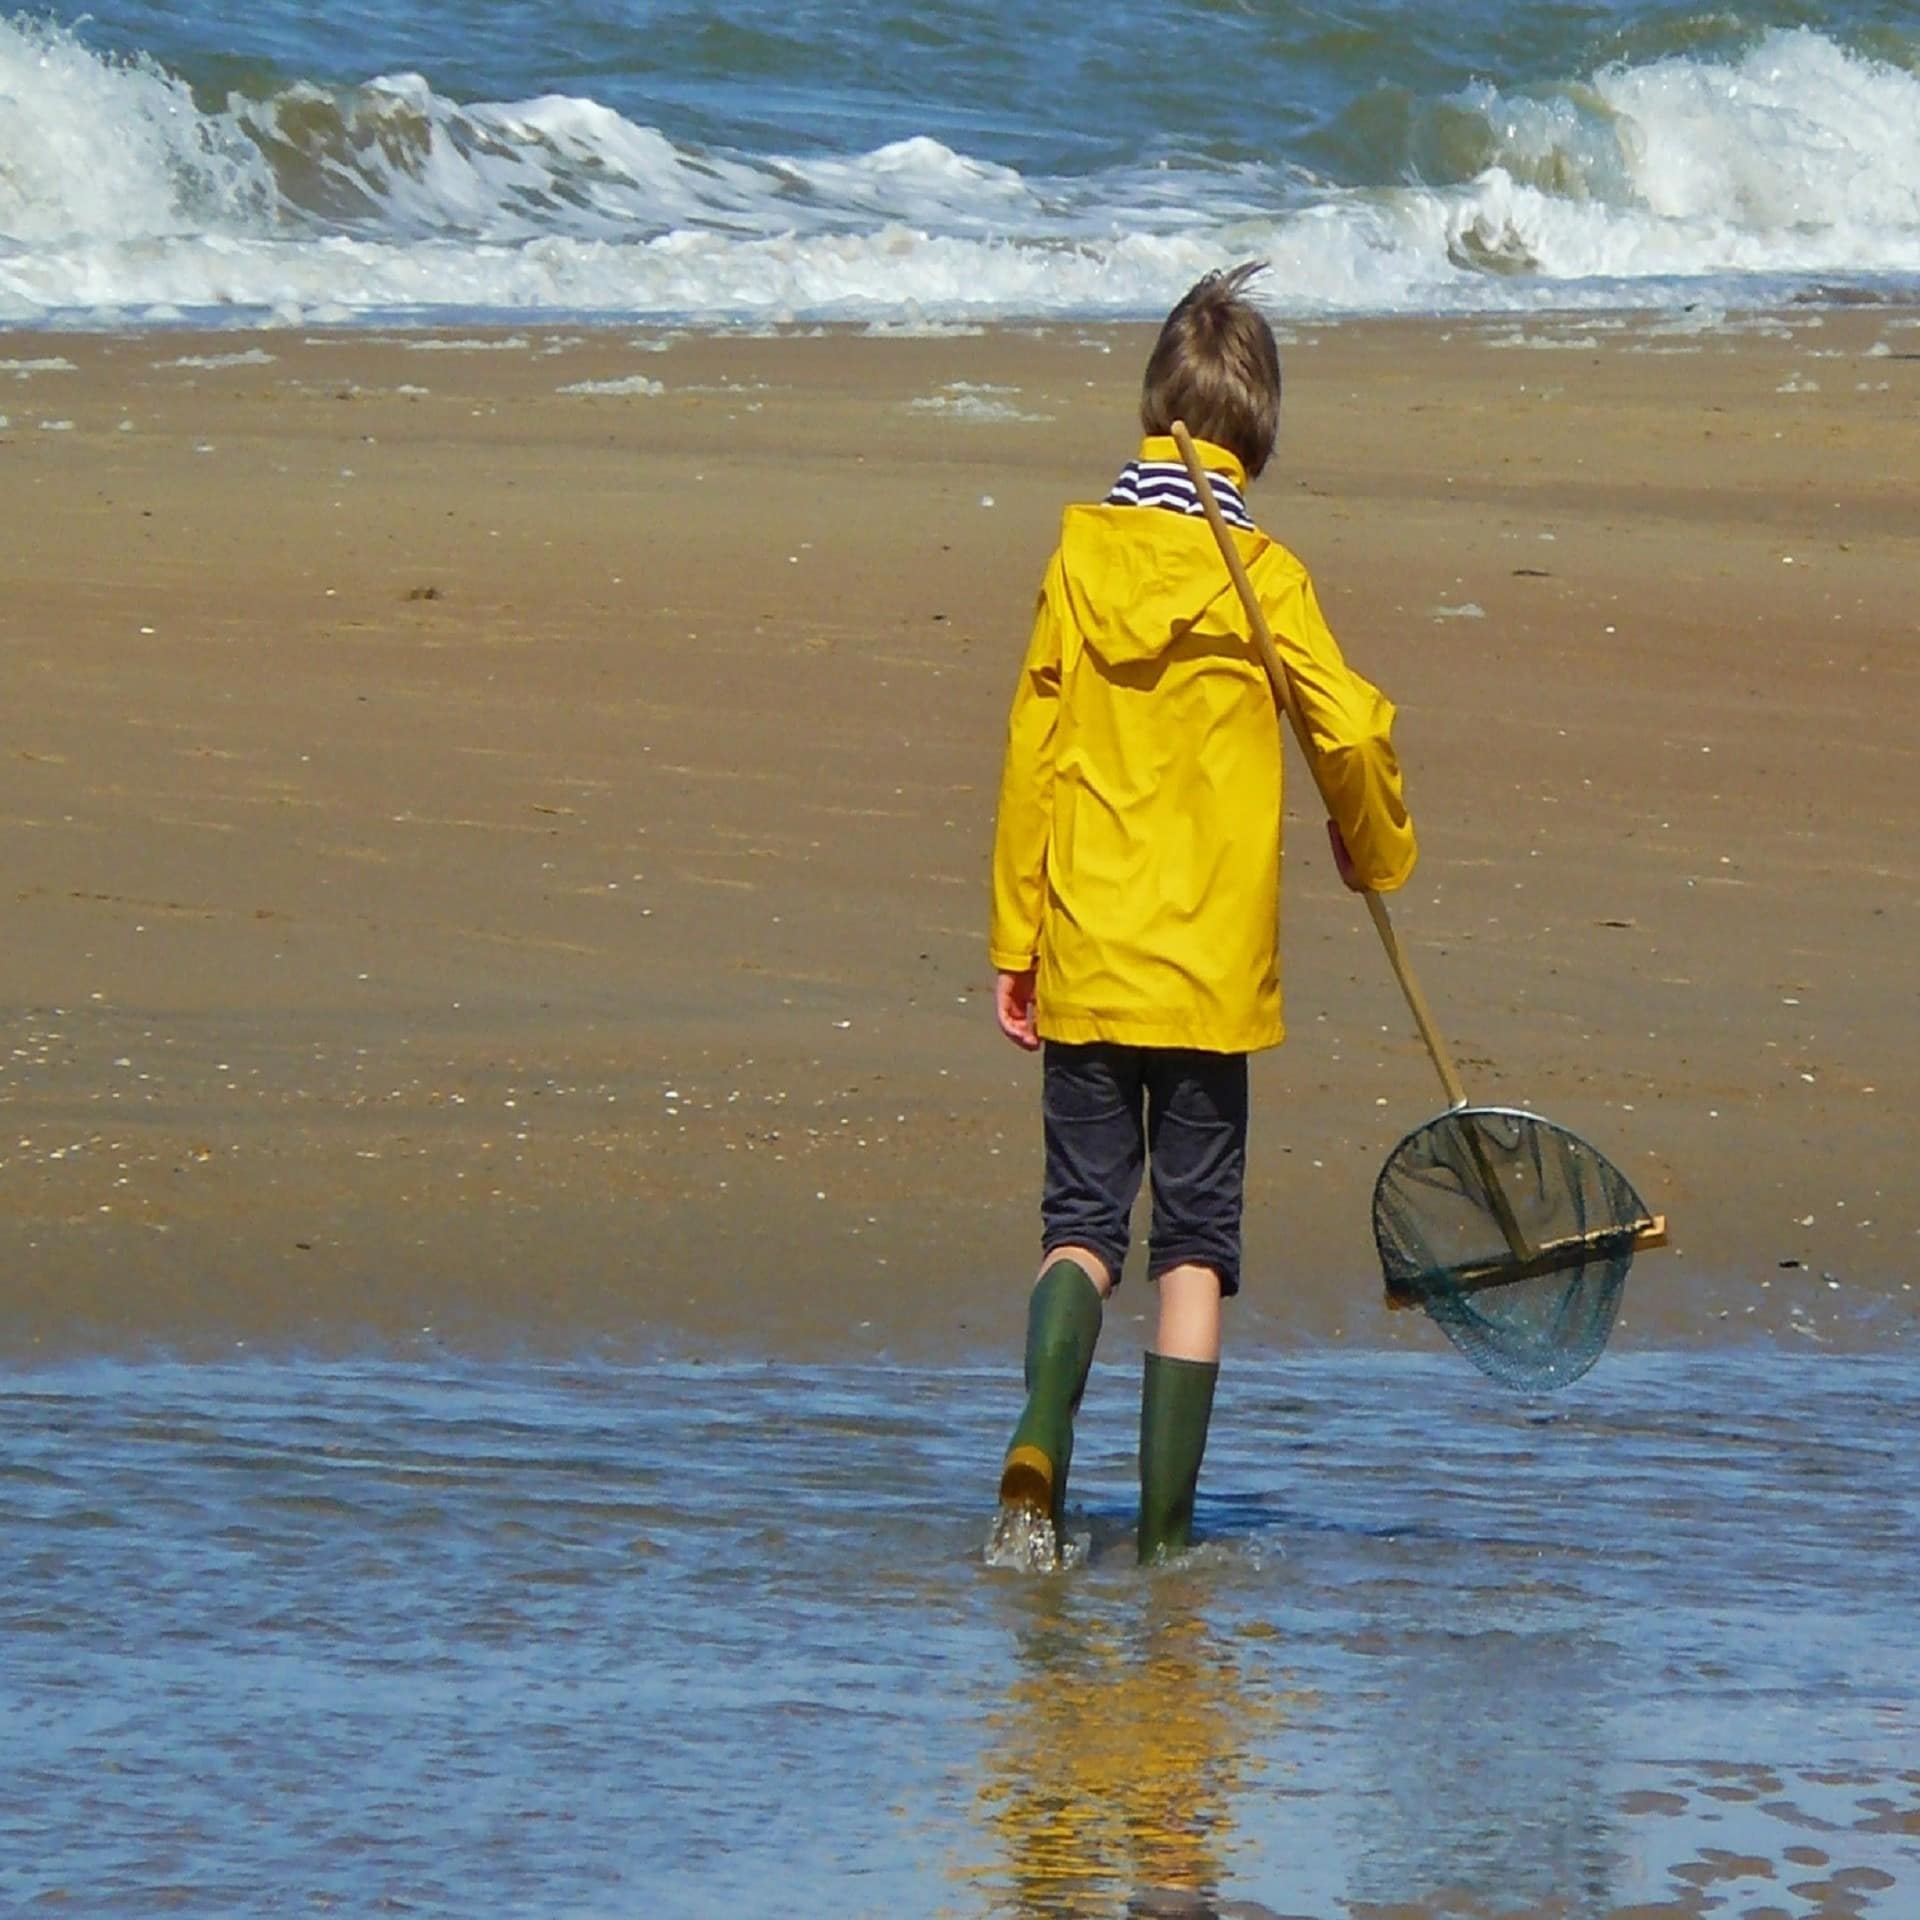 Rückenansicht: Junge mit gelber Jacke, grünen Gummistiefeln und Kescher am Strand.